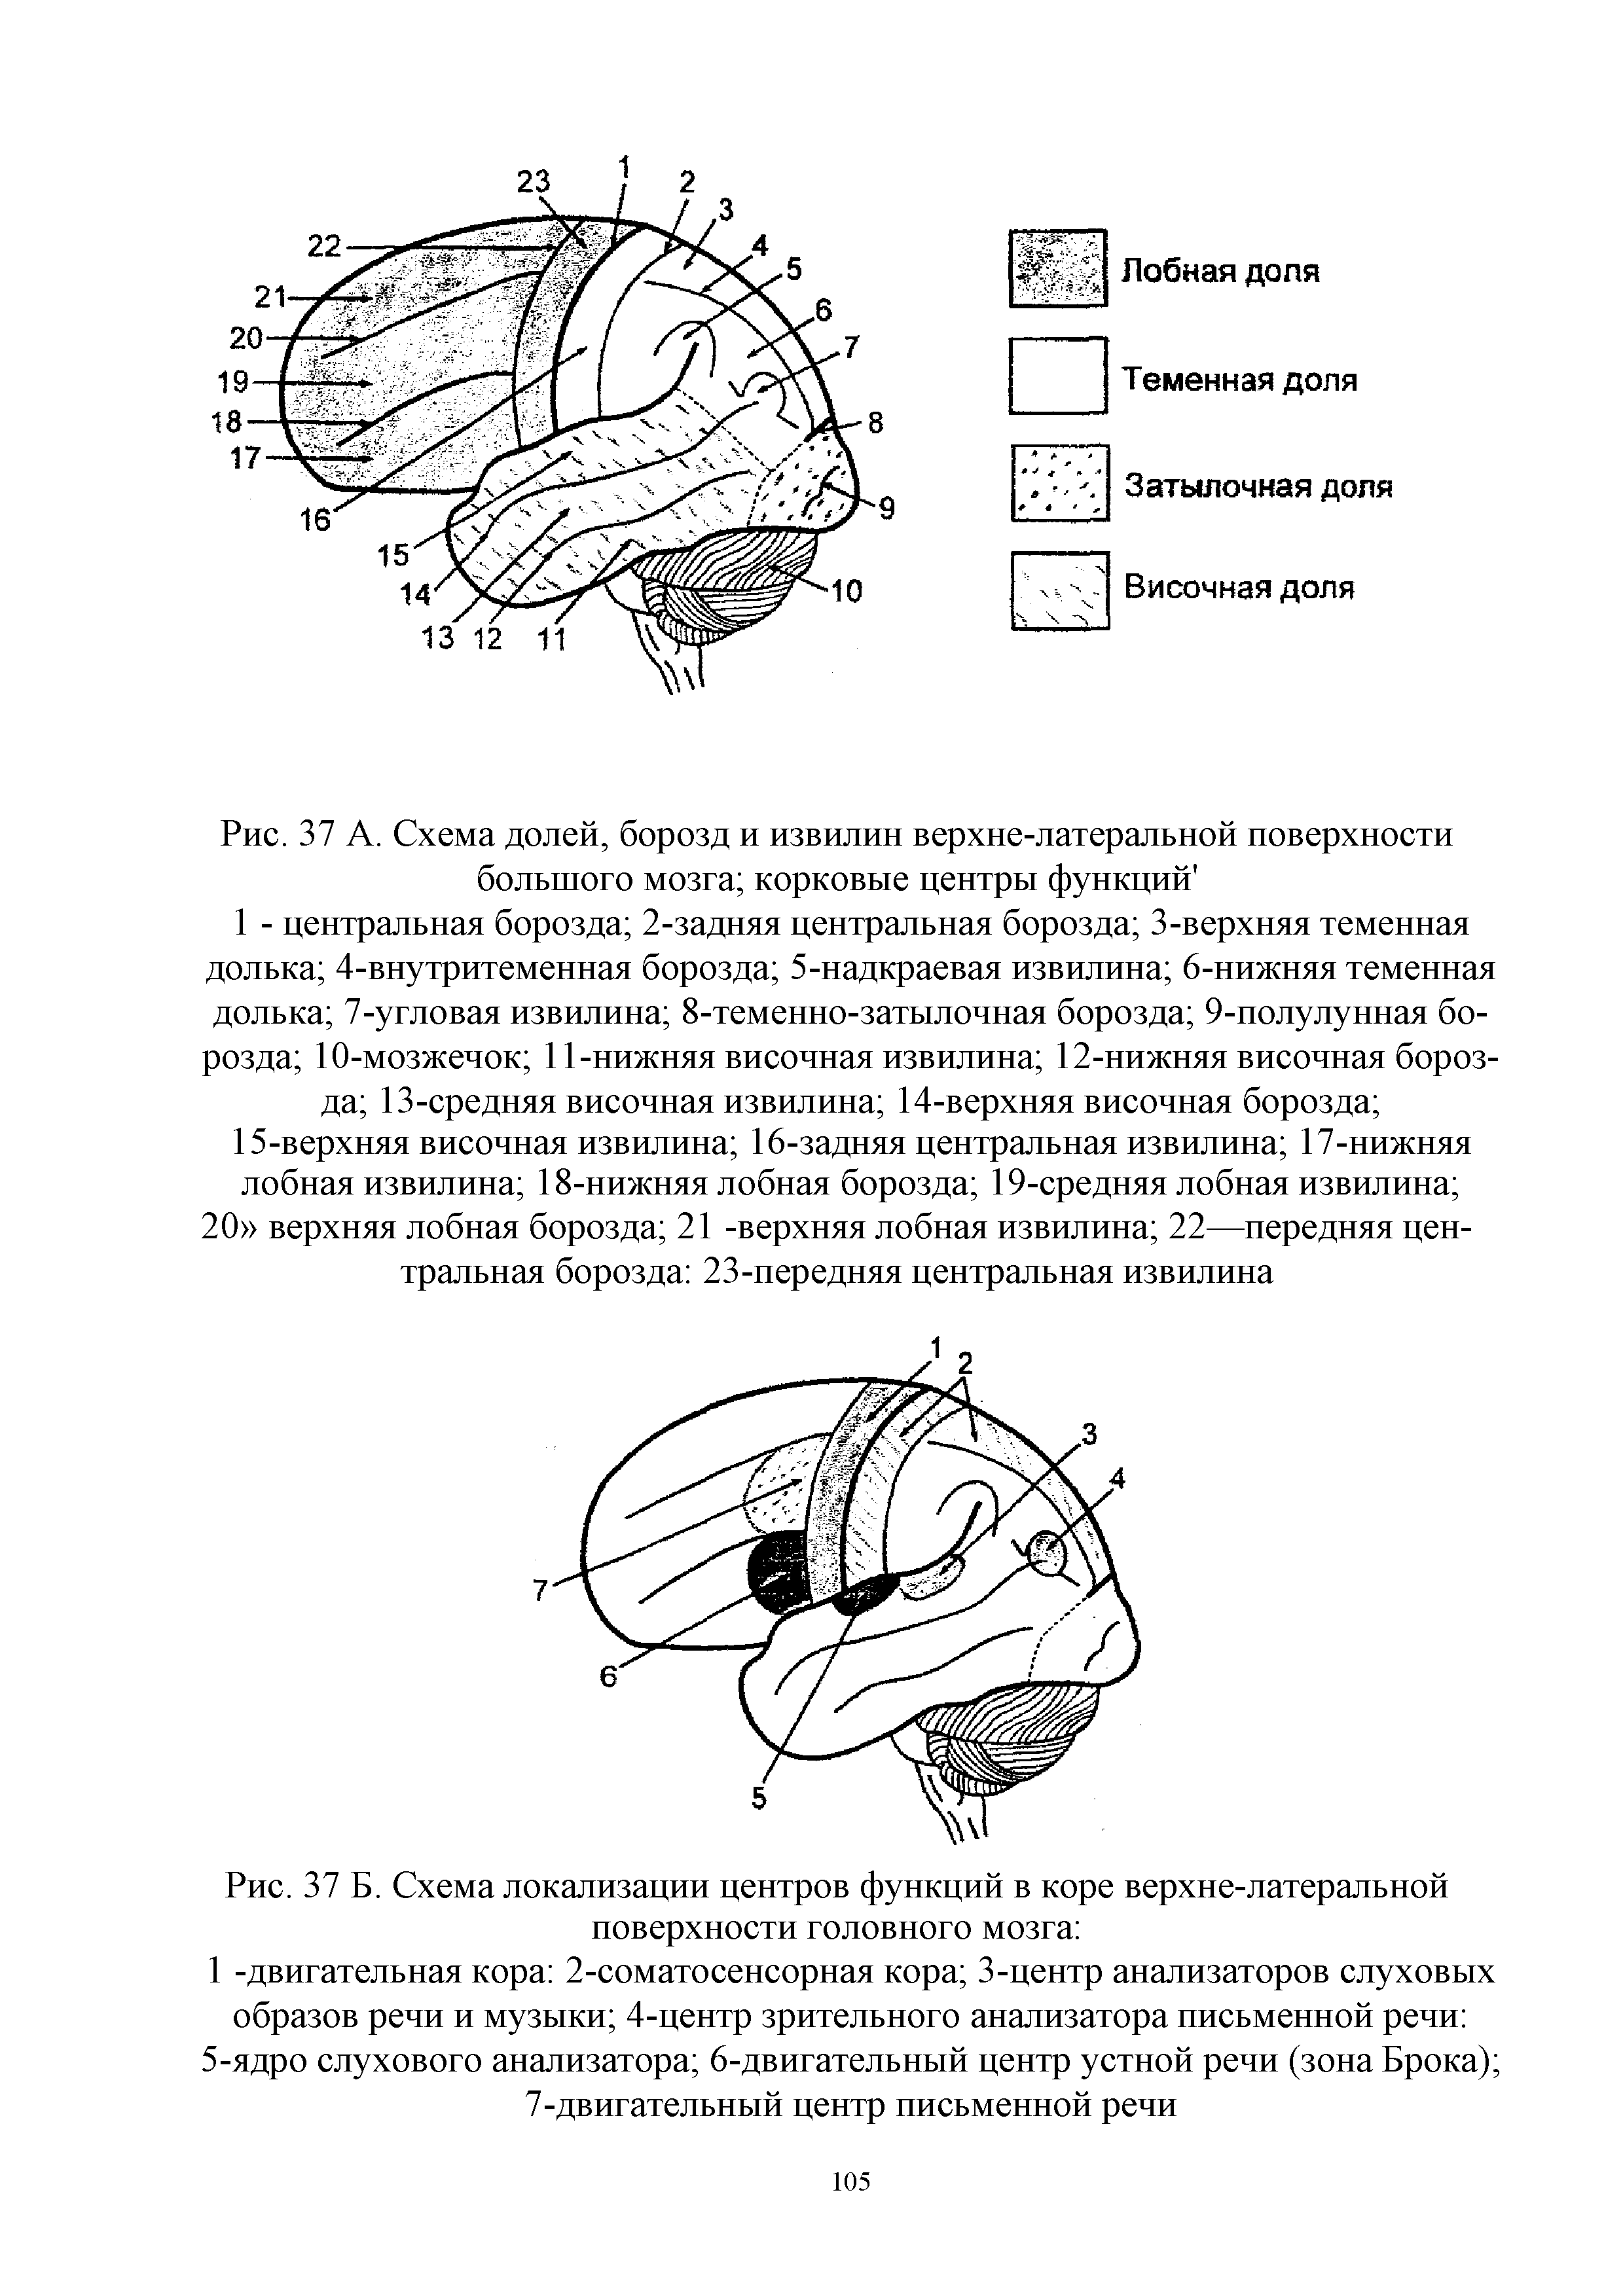 Рис. 37 Б. Схема локализации центров функций в коре верхне-латеральной поверхности головного мозга ...